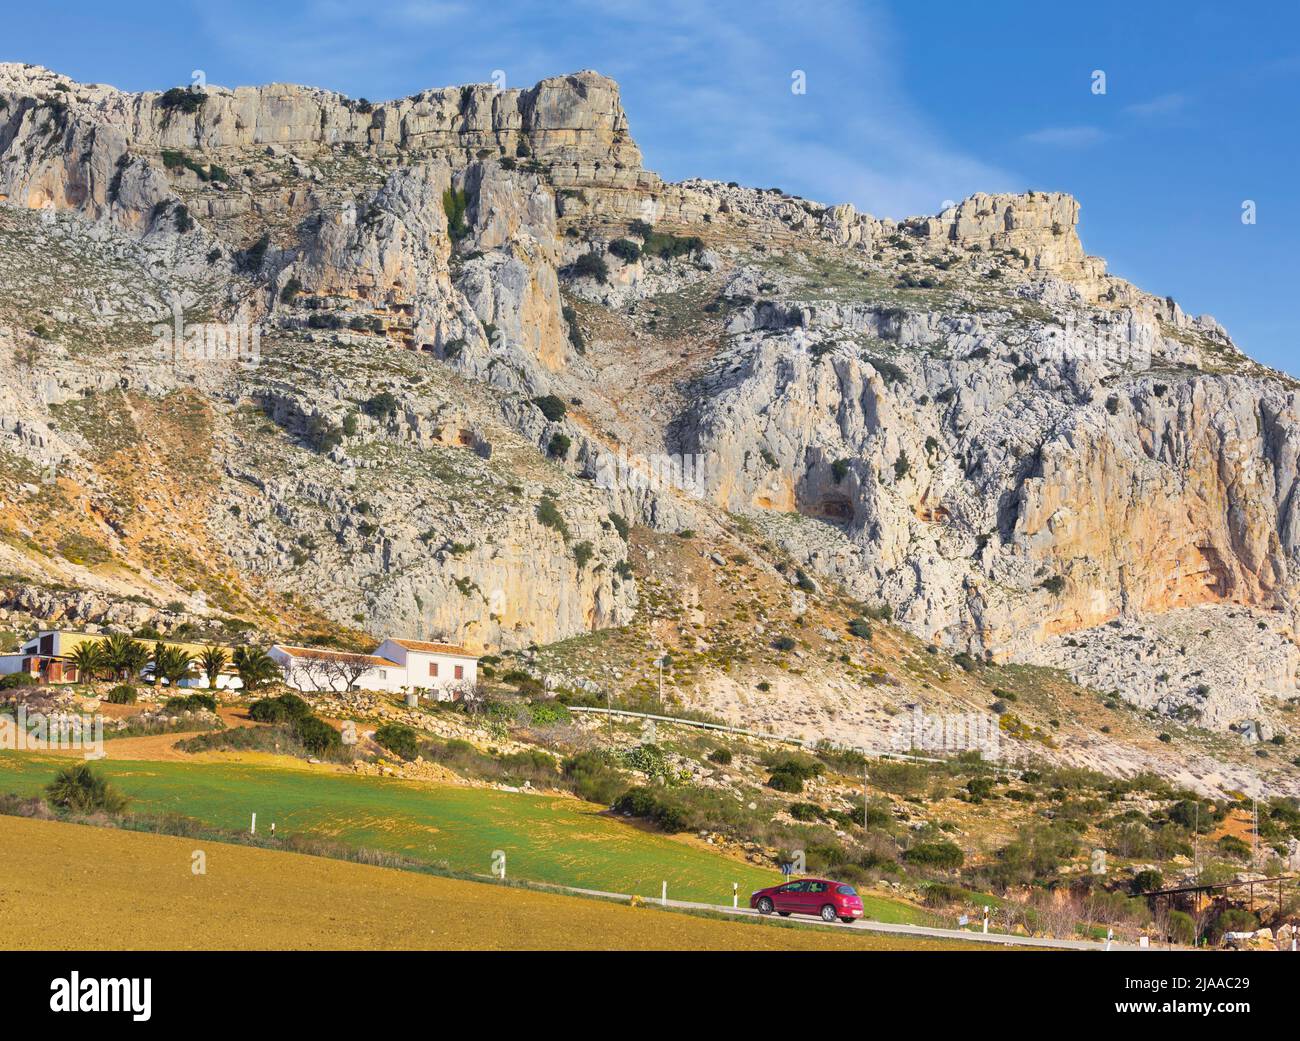 El Torcal, provincia de Málaga, Andalucía, sur de España. El Torcal de Antequera es famoso por sus formaciones rocosas karst. Forma parte de la Sierra del T. Foto de stock